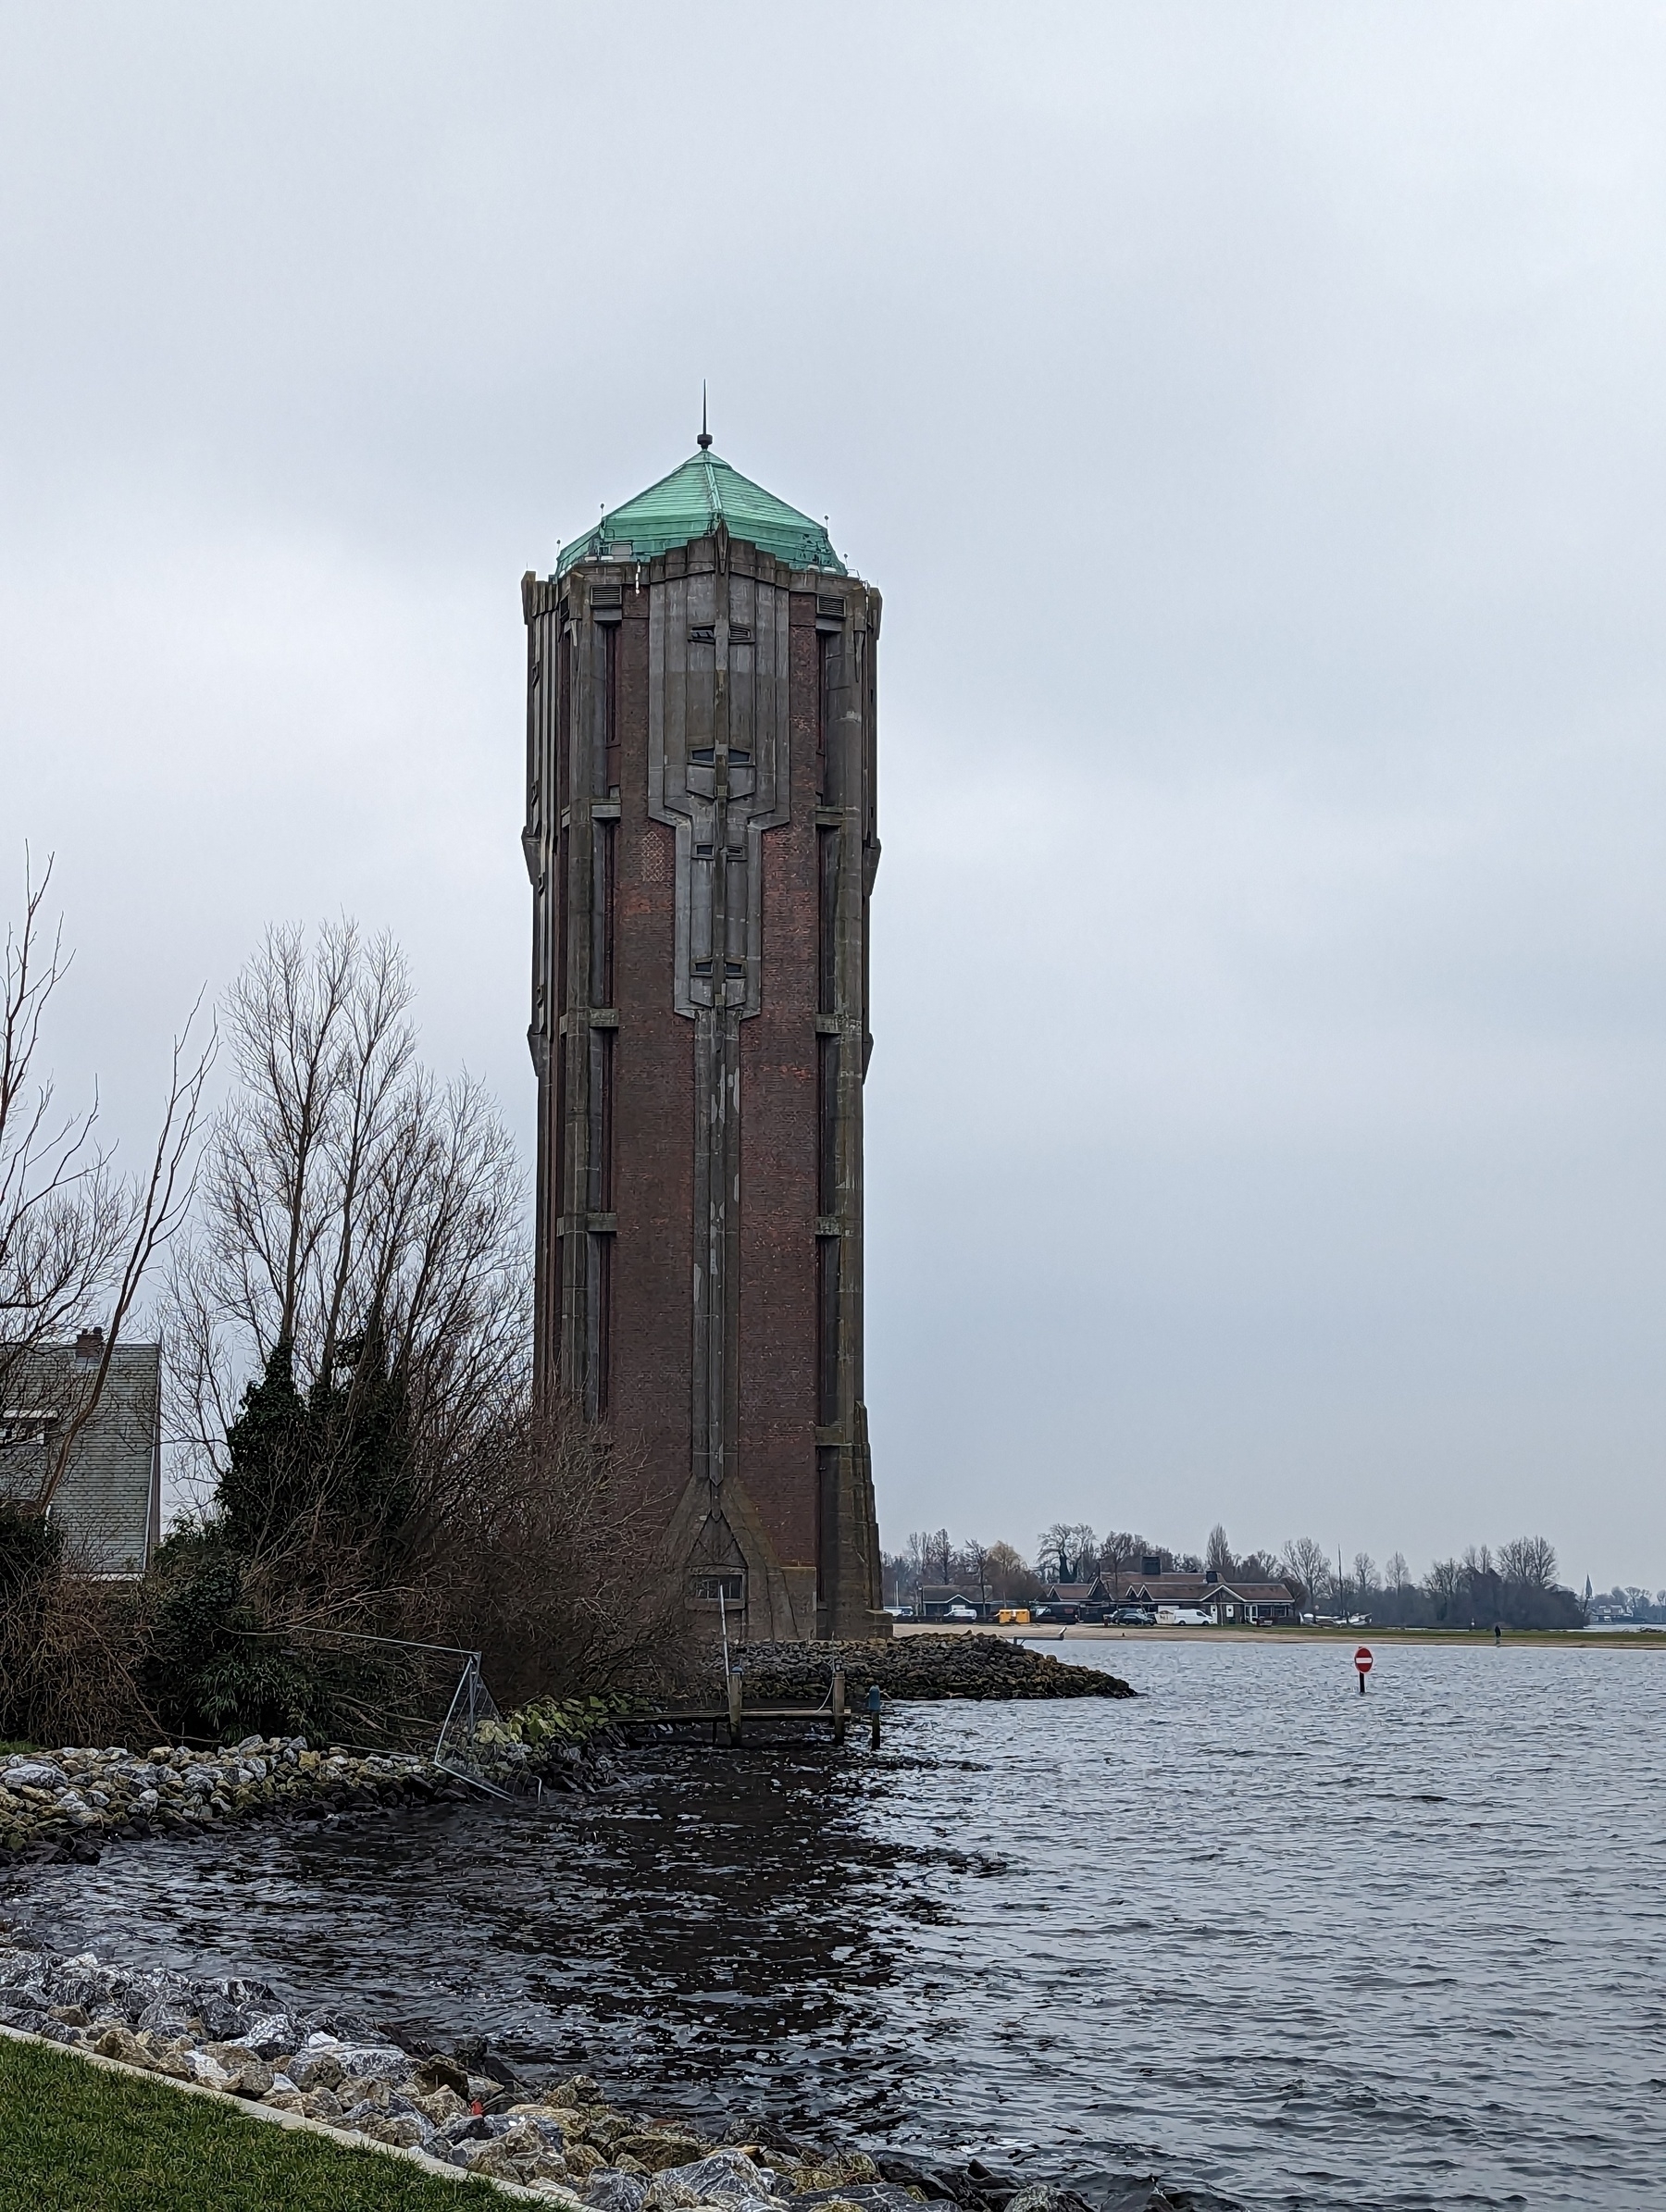 The water tower of Aalsmeer